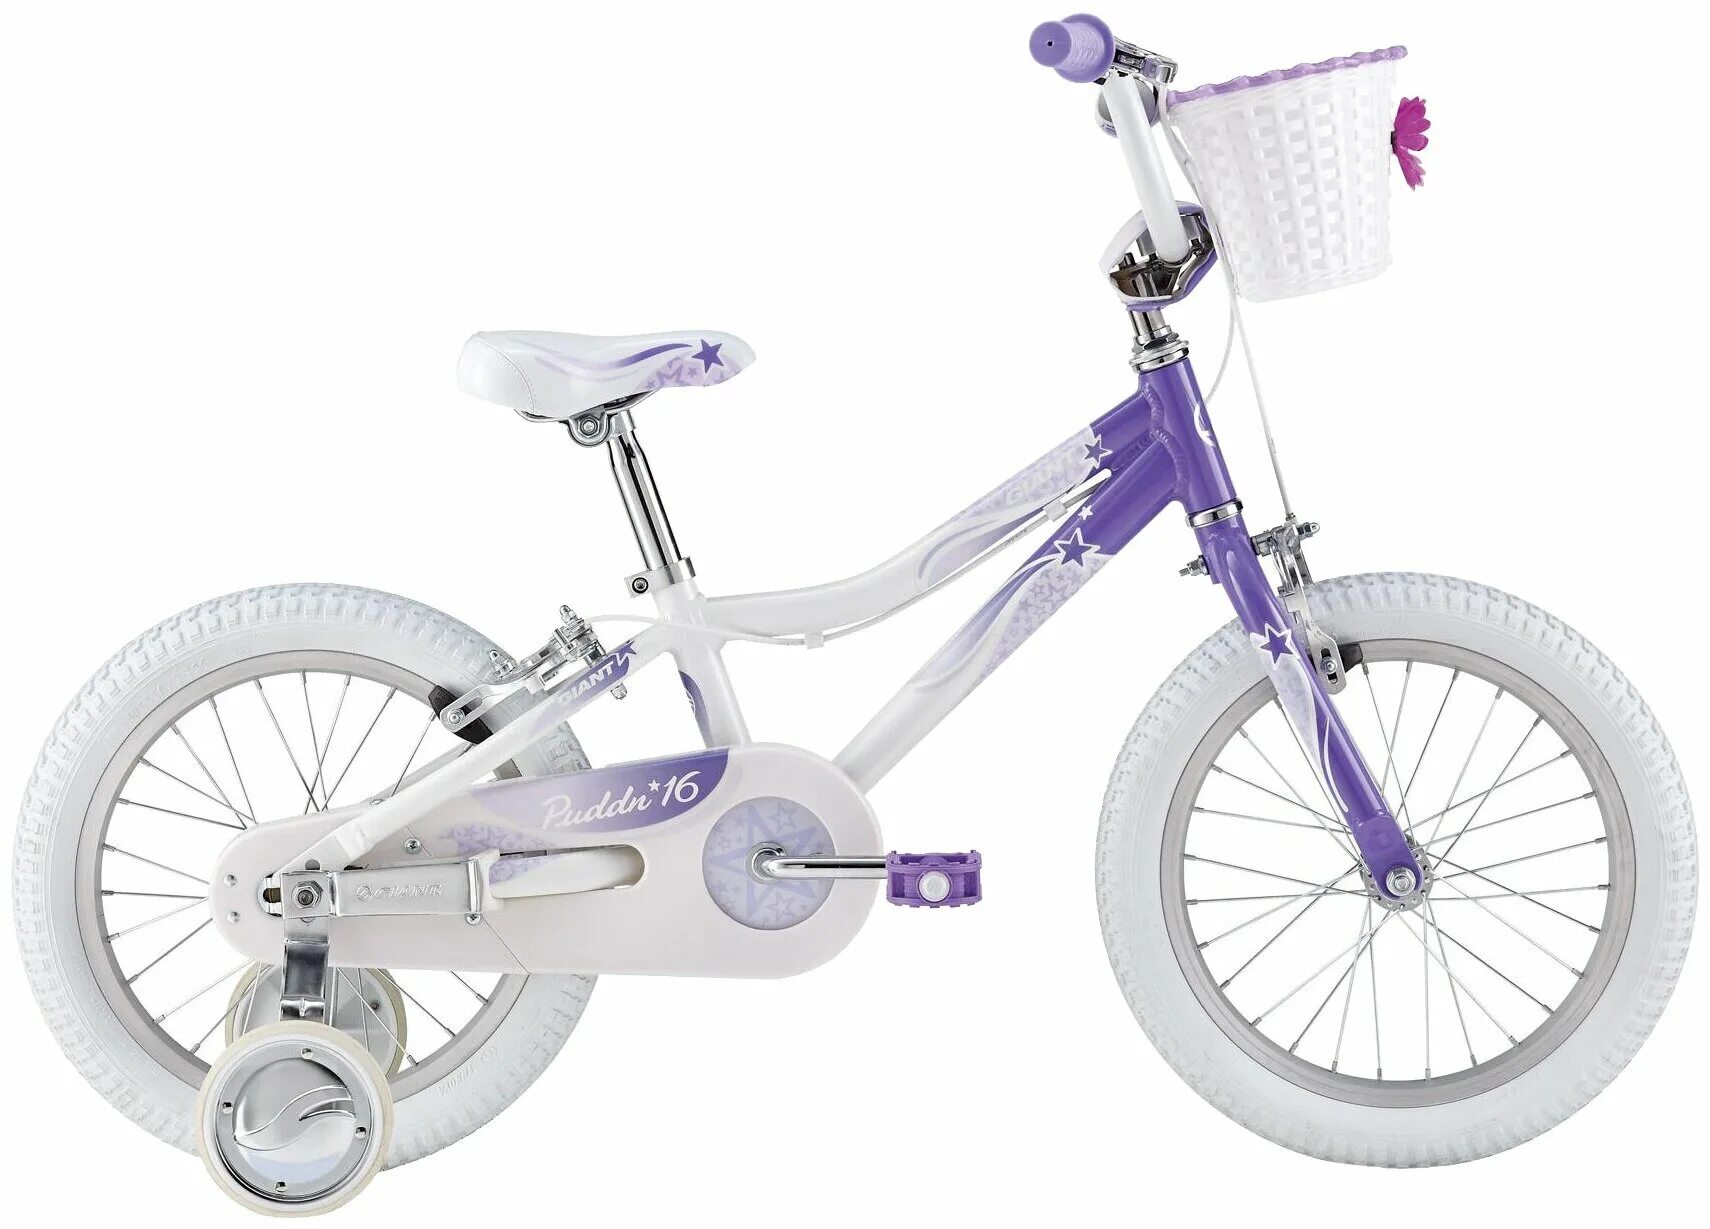 Какой велосипед выбрать для девочки. Детский велосипед giant Puddin. Детский велосипед giant 16. Детский велосипед giant Lil' Pudd'n f/w. Детский велосипед giant Lil' Pudd'n c/b.